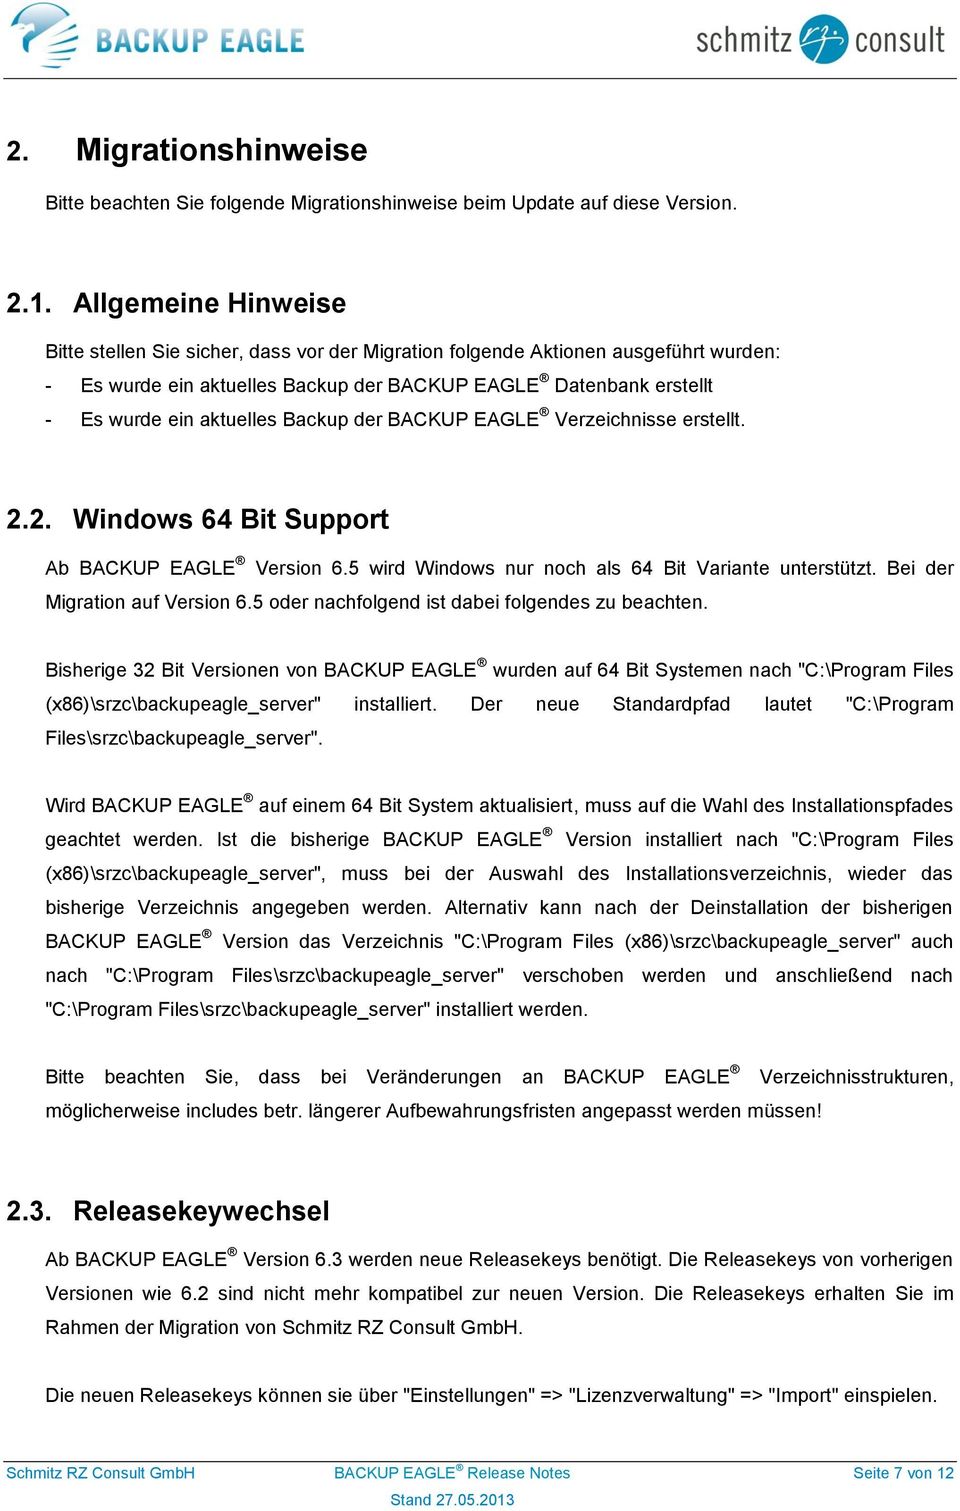 Backup der BACKUP EAGLE Verzeichnisse erstellt. 2.2. Windows 64 Bit Support Ab BACKUP EAGLE Version 6.5 wird Windows nur noch als 64 Bit Variante unterstützt. Bei der Migration auf Version 6.